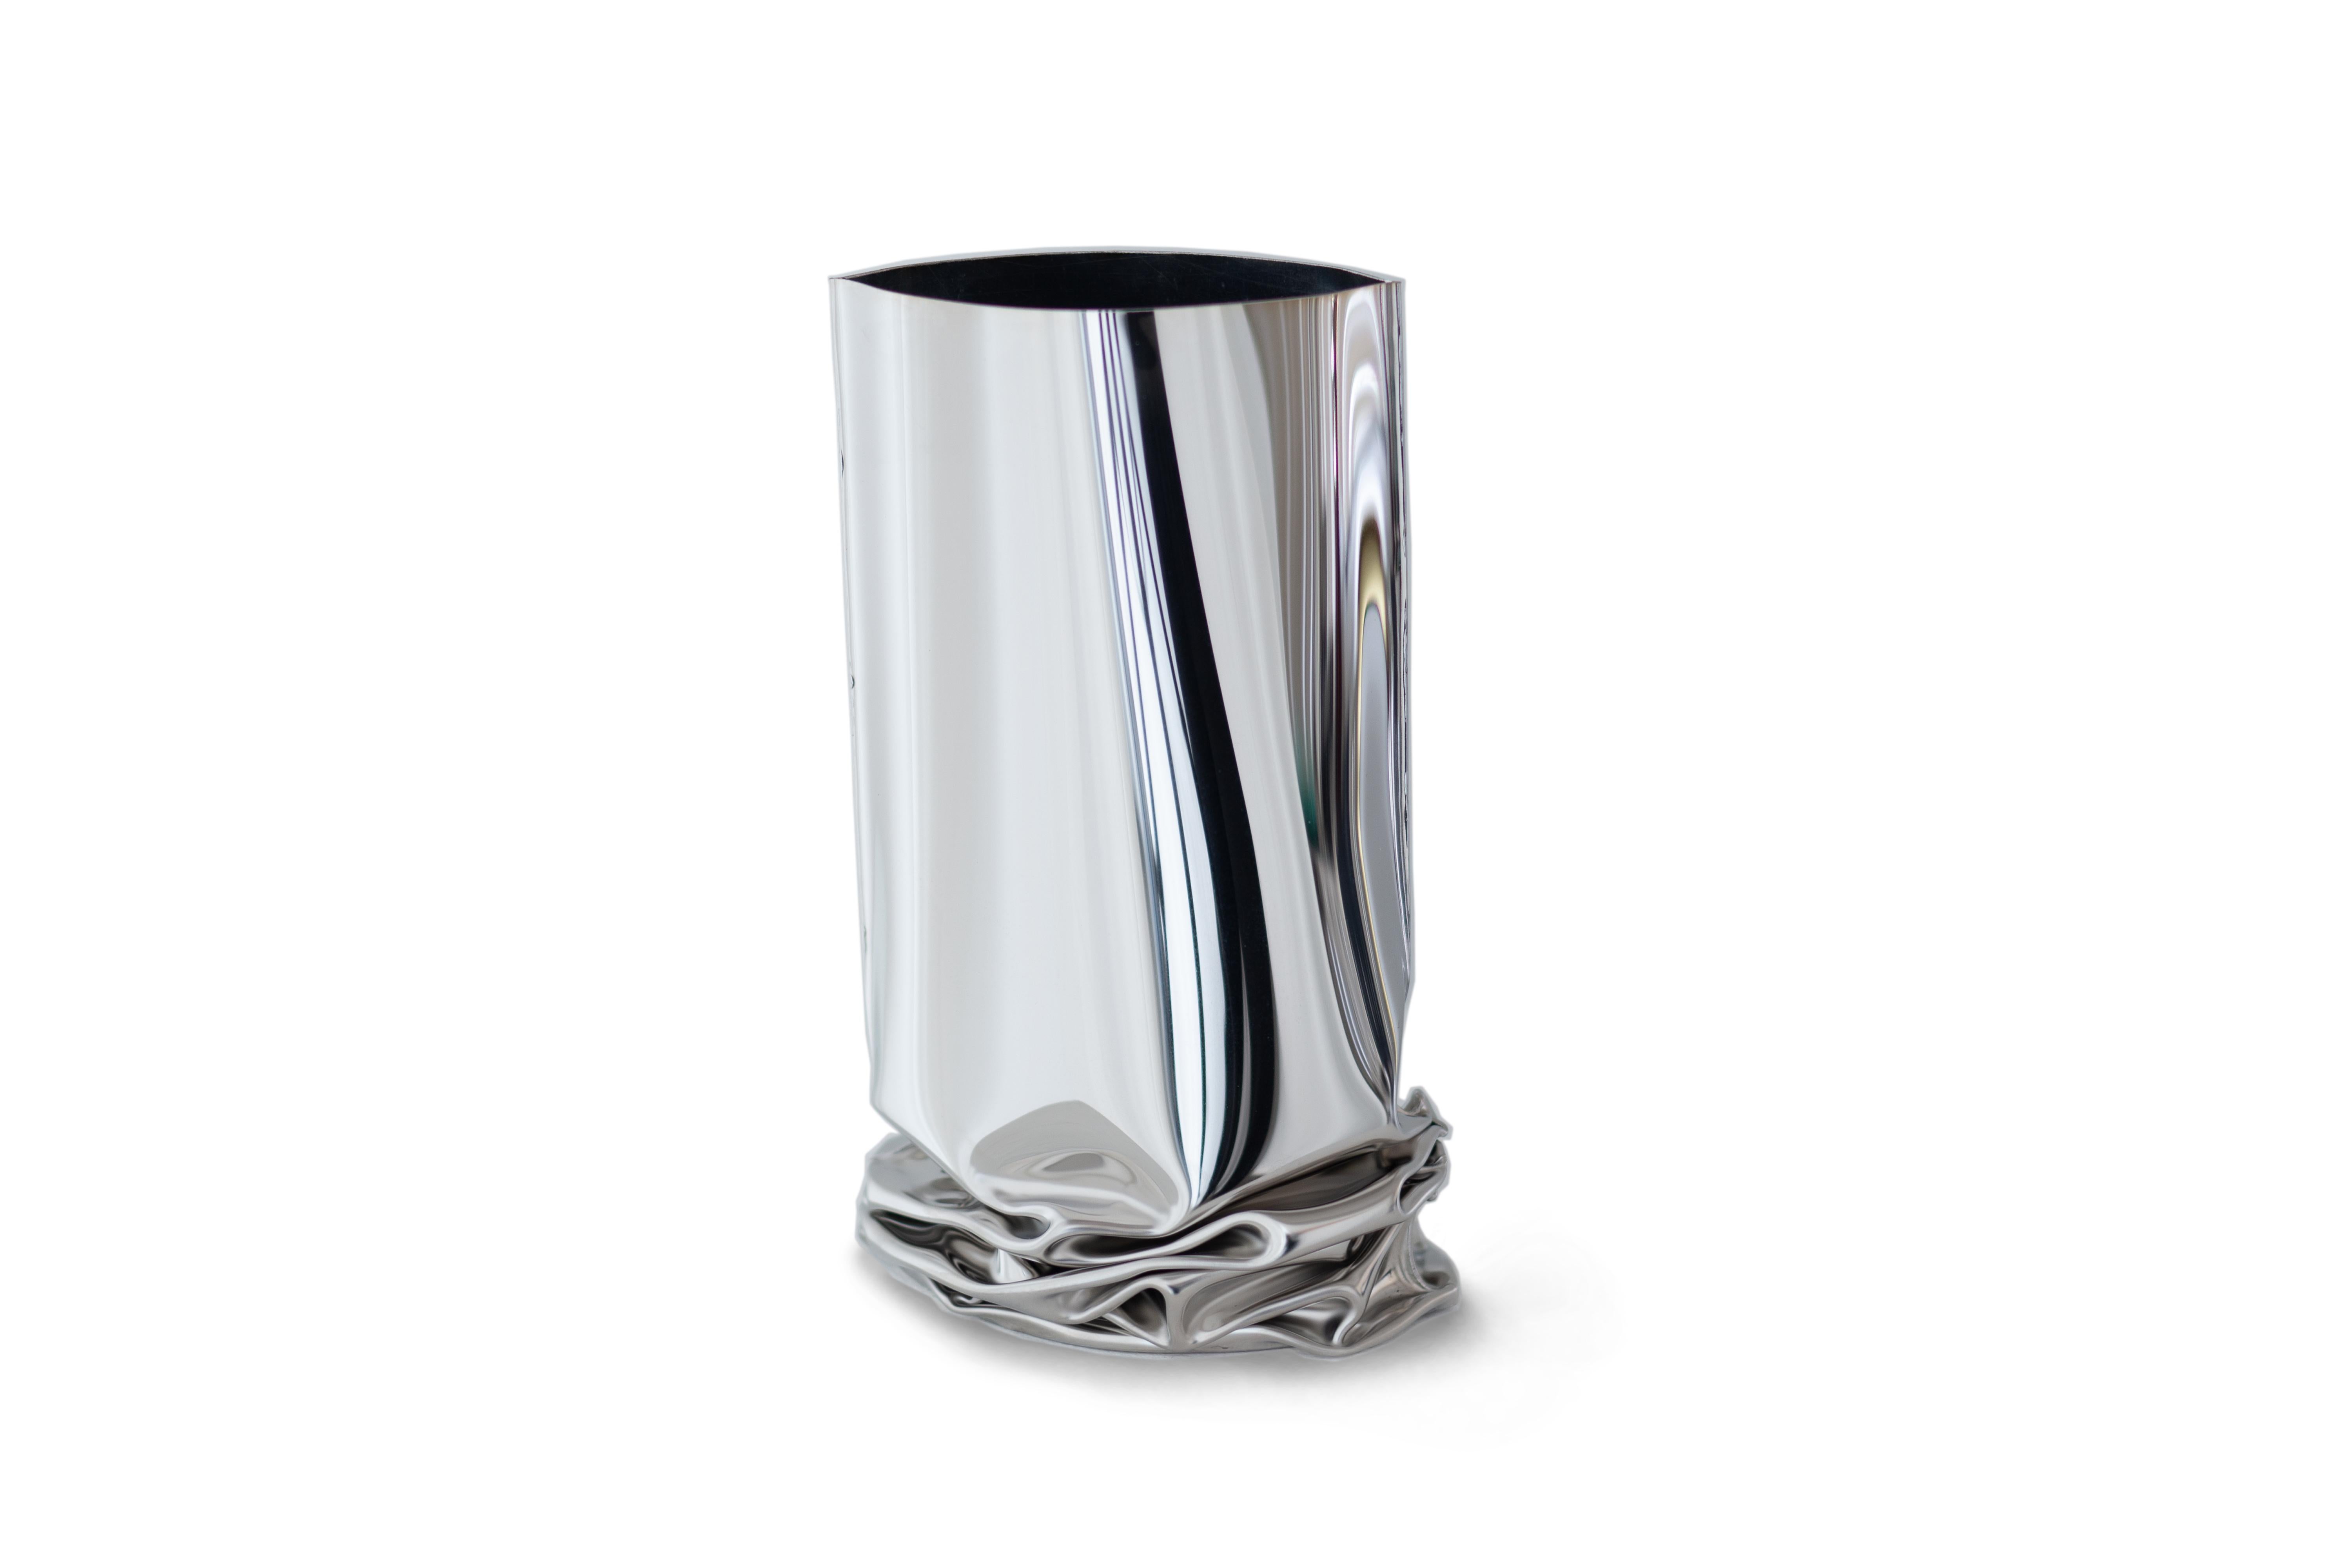 Vase Crash 2 par Zieta
Dimensions : H 25 x L 16 x P 18 cm.
MATERIAL : acier inoxydable poli.

Les vases Crash à déformation discrète reflètent la technique de la 